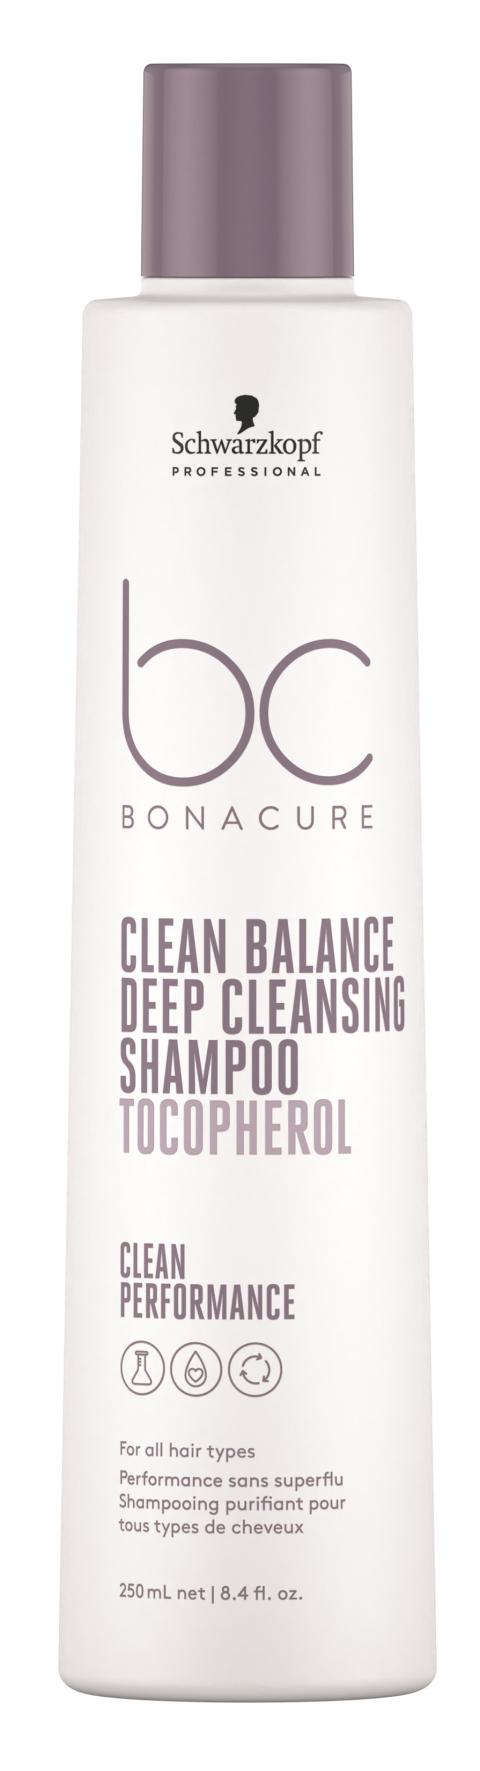 BC Clean Balance Deep Cleansing Shampoo 